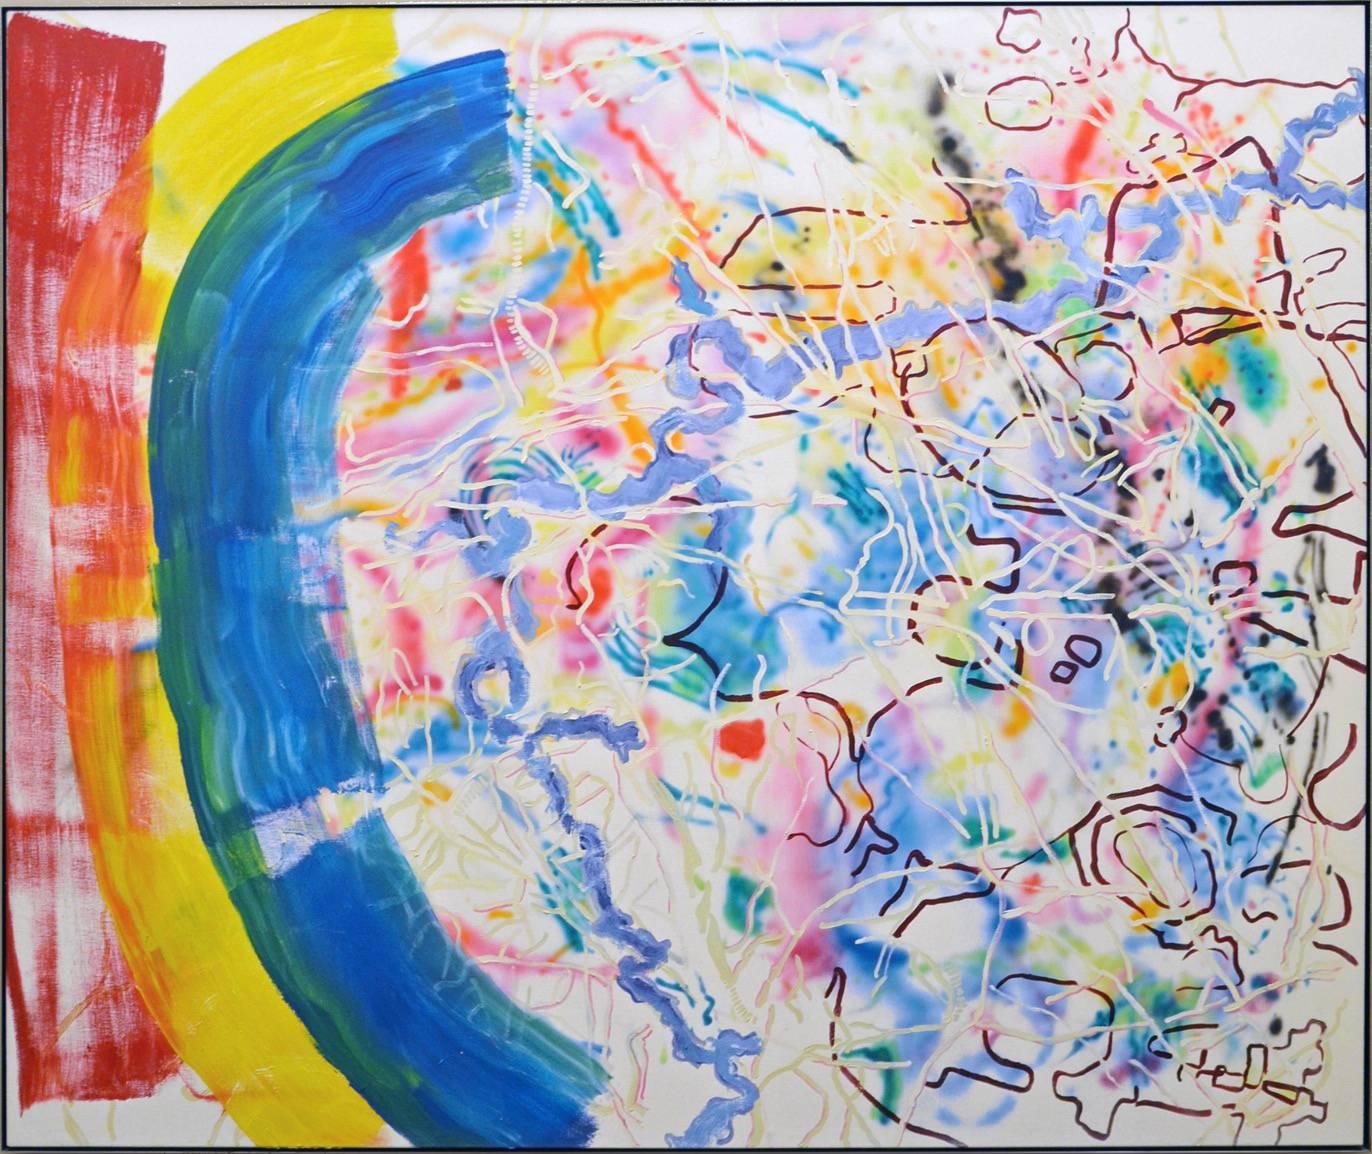 « RBY », 1980, huile/toile - Grande huile/toile abstraite très colorée jaune rouge bleu vert blanc